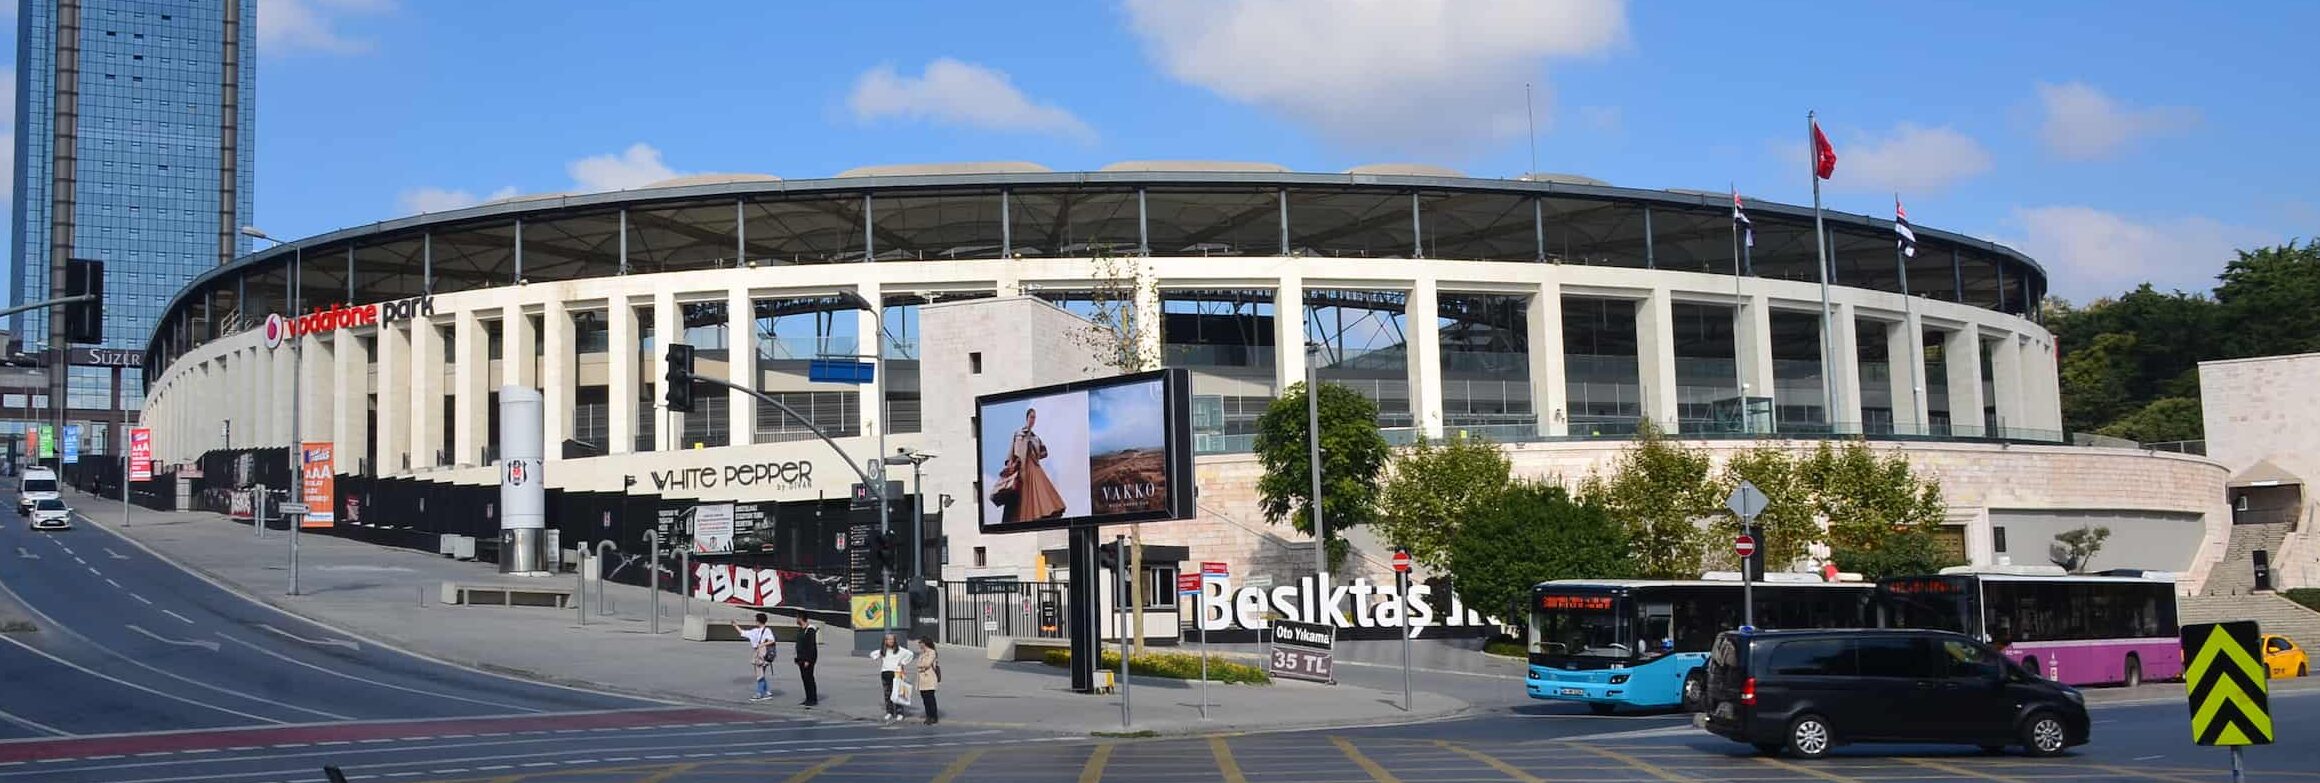 Beşiktaş Stadium in Dolmabahçe, Istanbul, Turkey